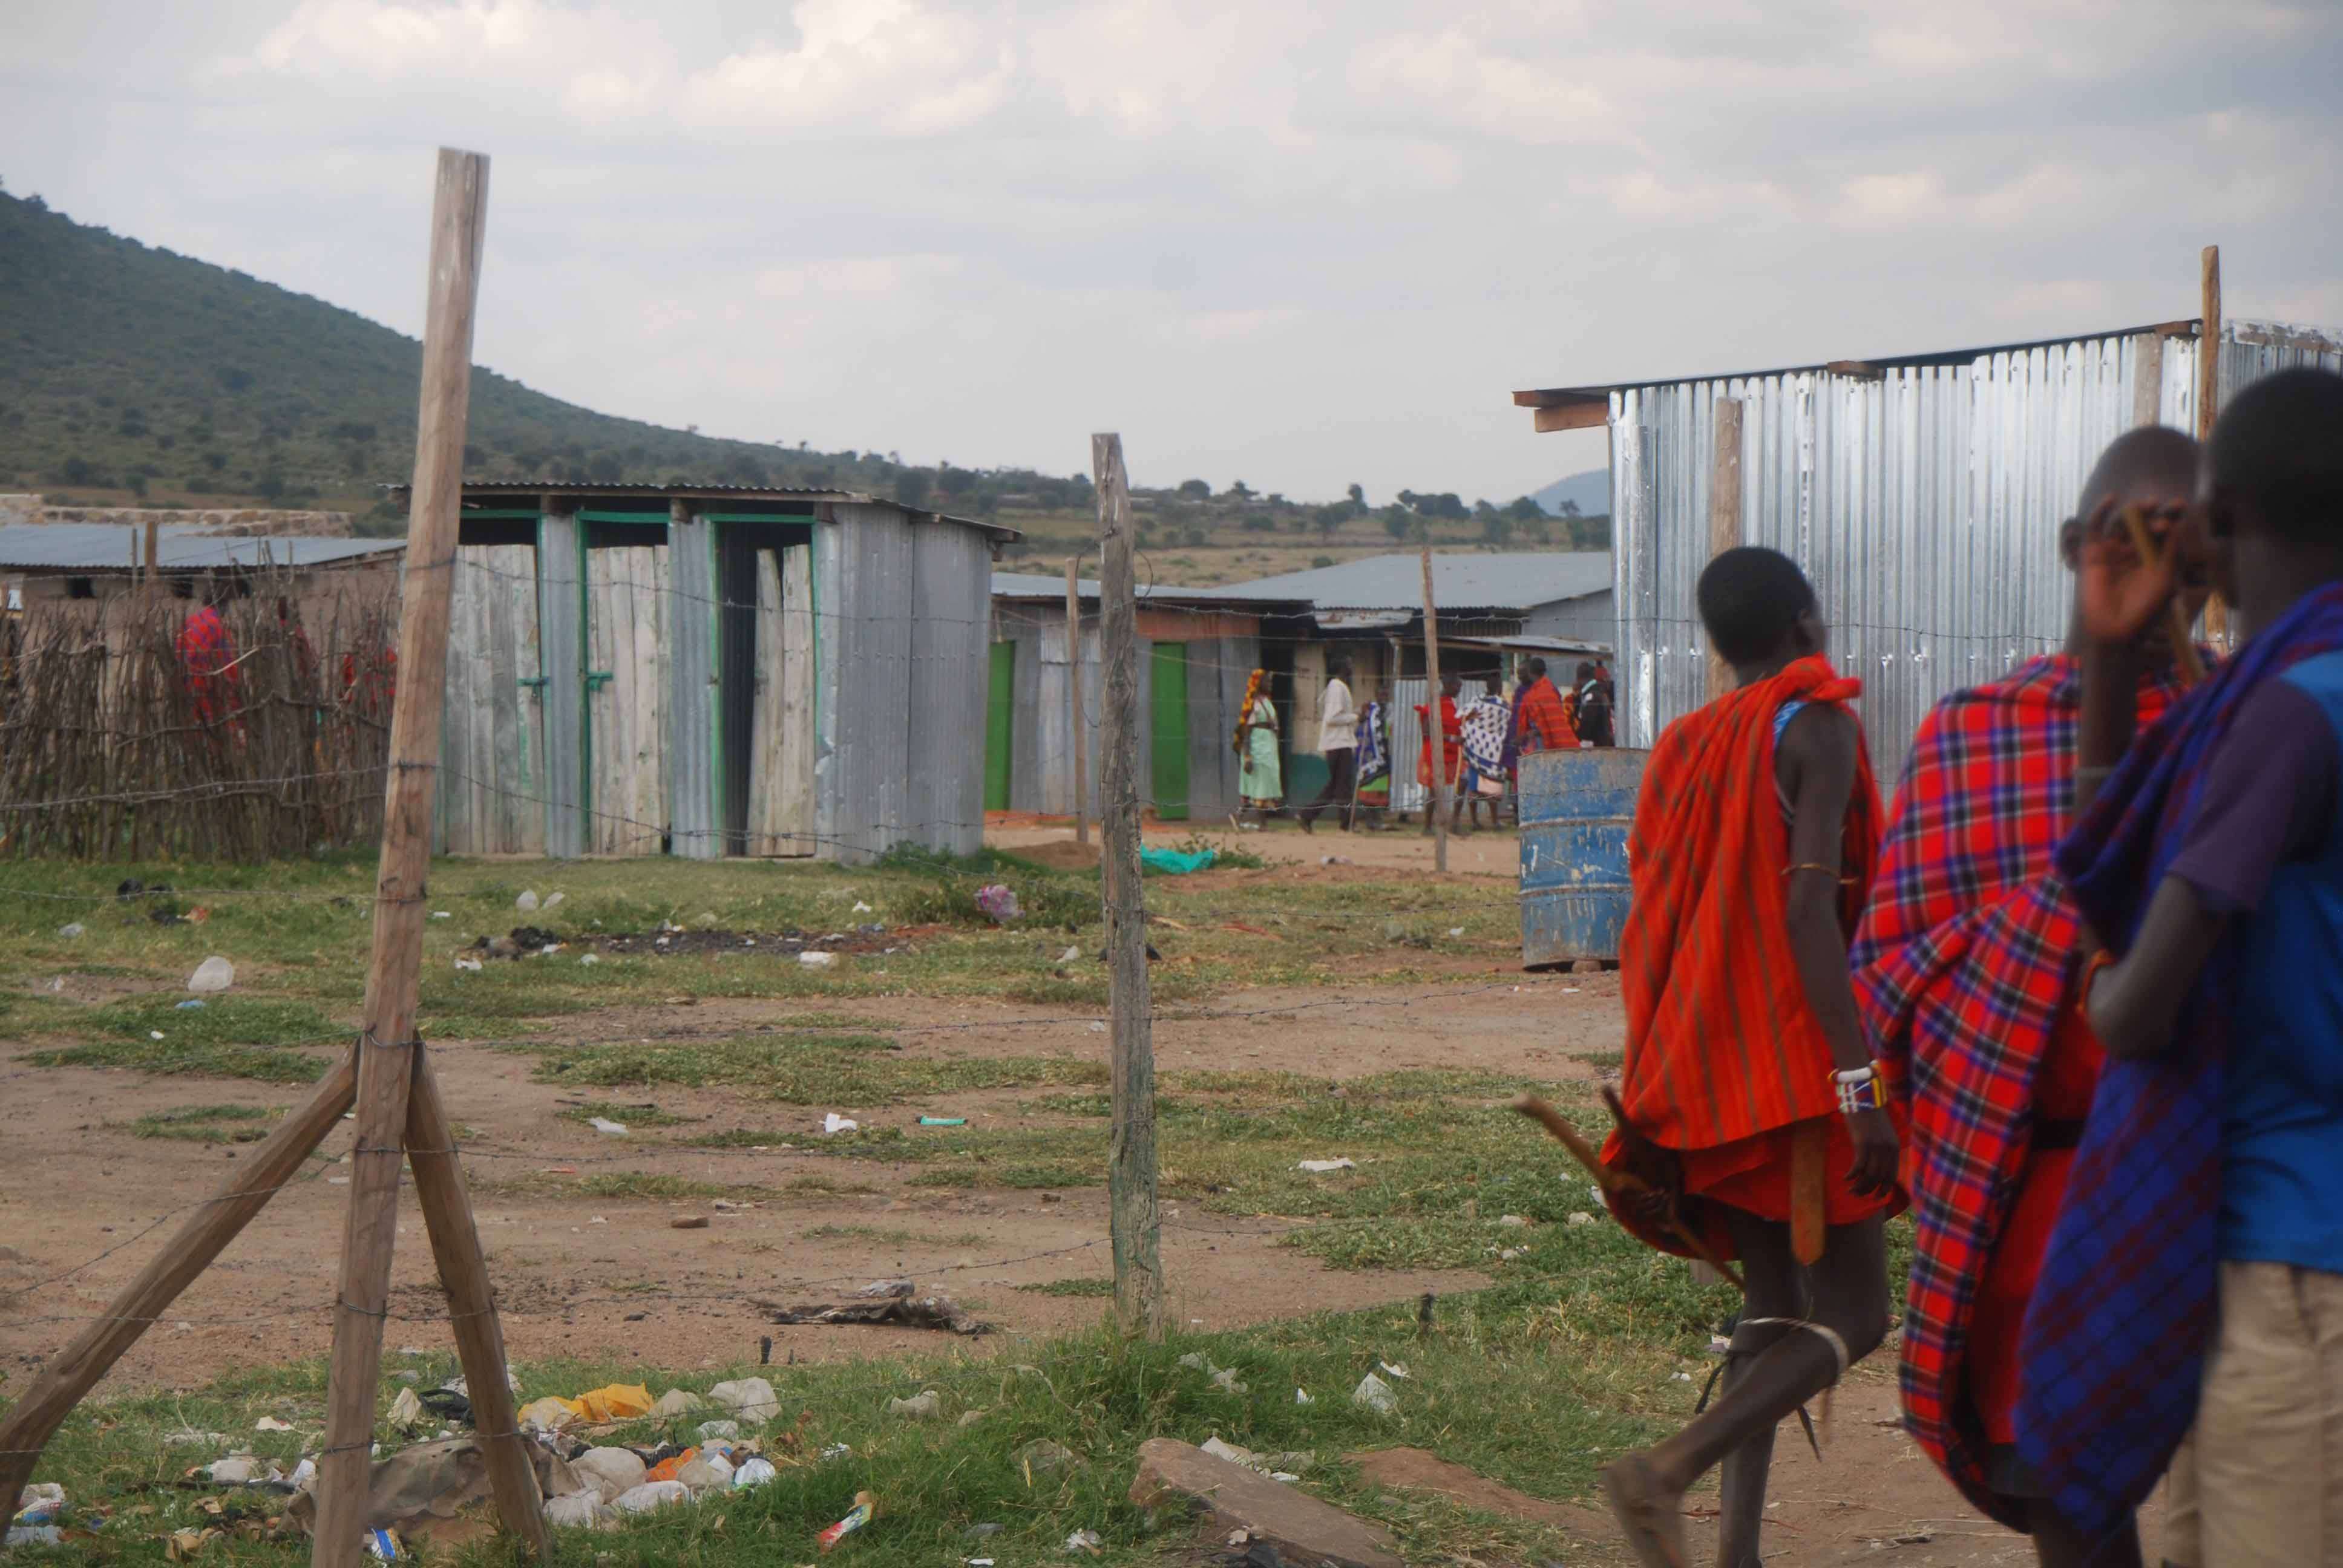 Regreso al Mara - Kenia - Blogs de Kenia - El mercado masai, un intento fallido de ver el cruce y algunas mariposas (25)